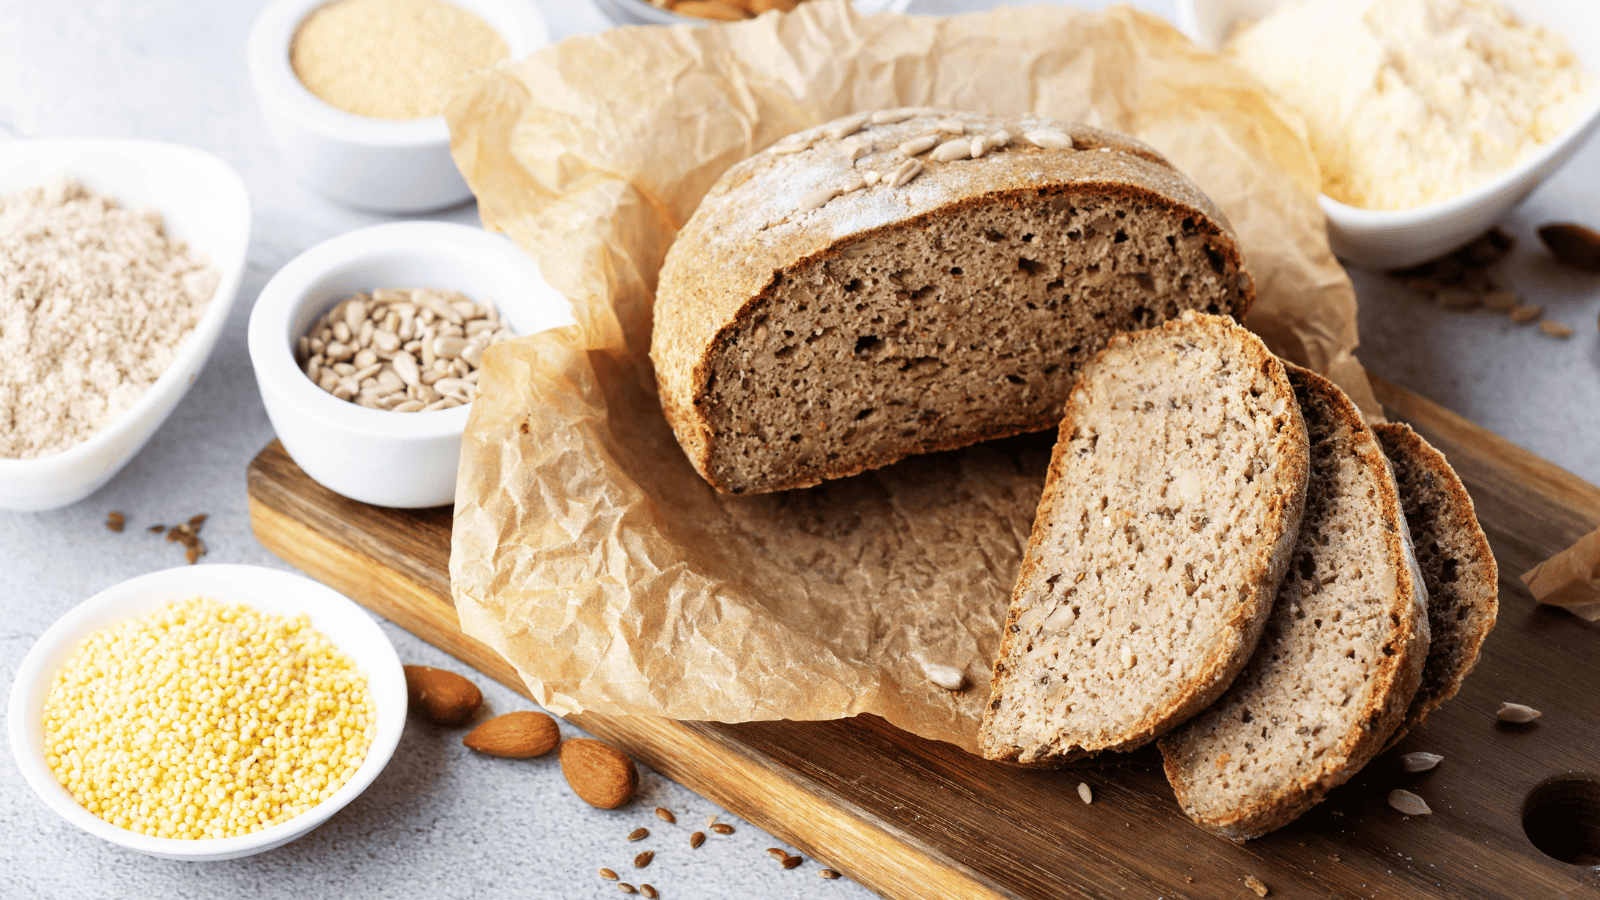 Low-carb bread recipes